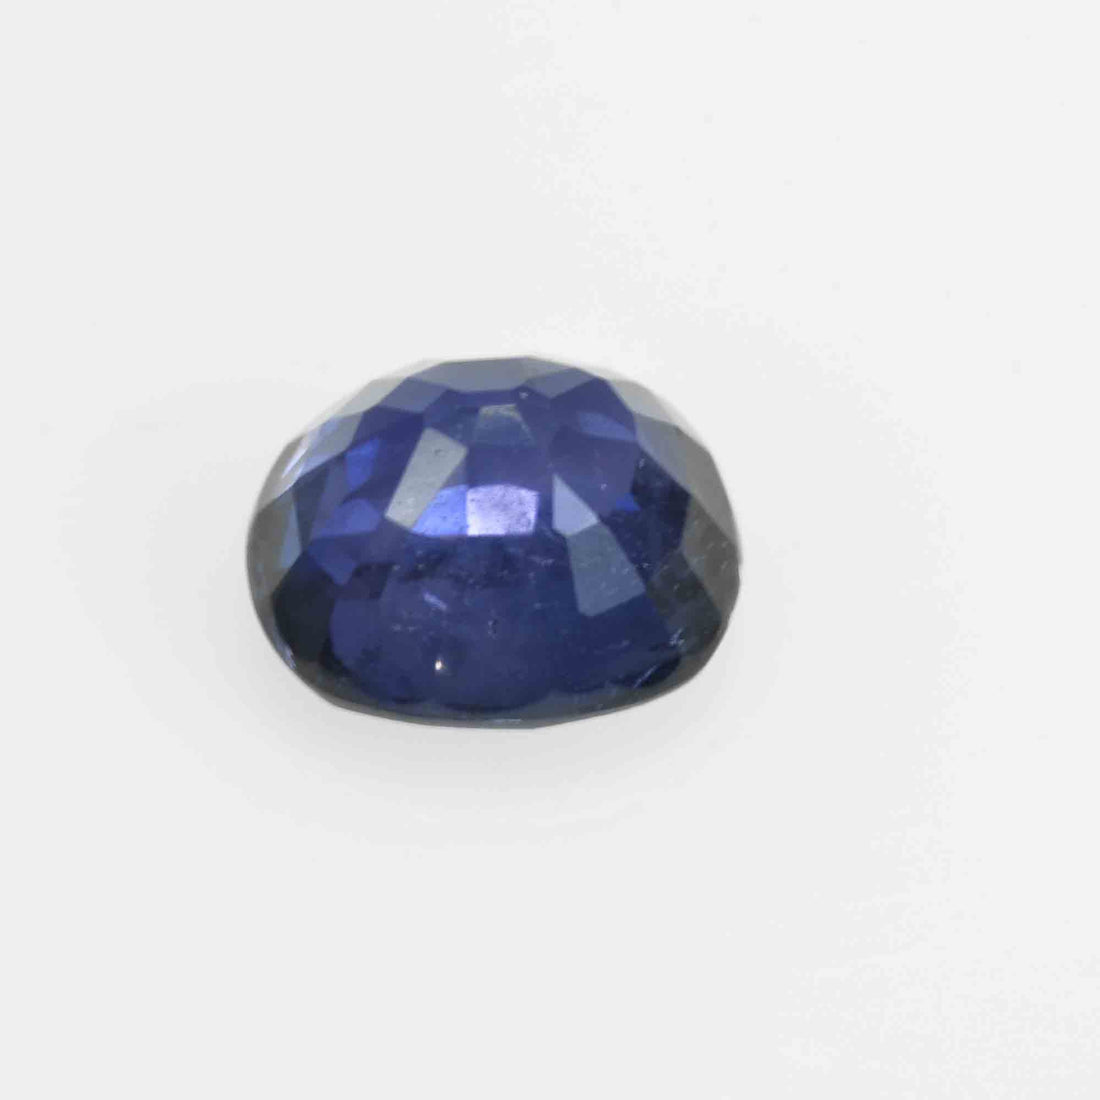 0.73 Cts  Natural Blue Sapphire Loose Gemstone Cushion Cut - Thai Gems Export Ltd.